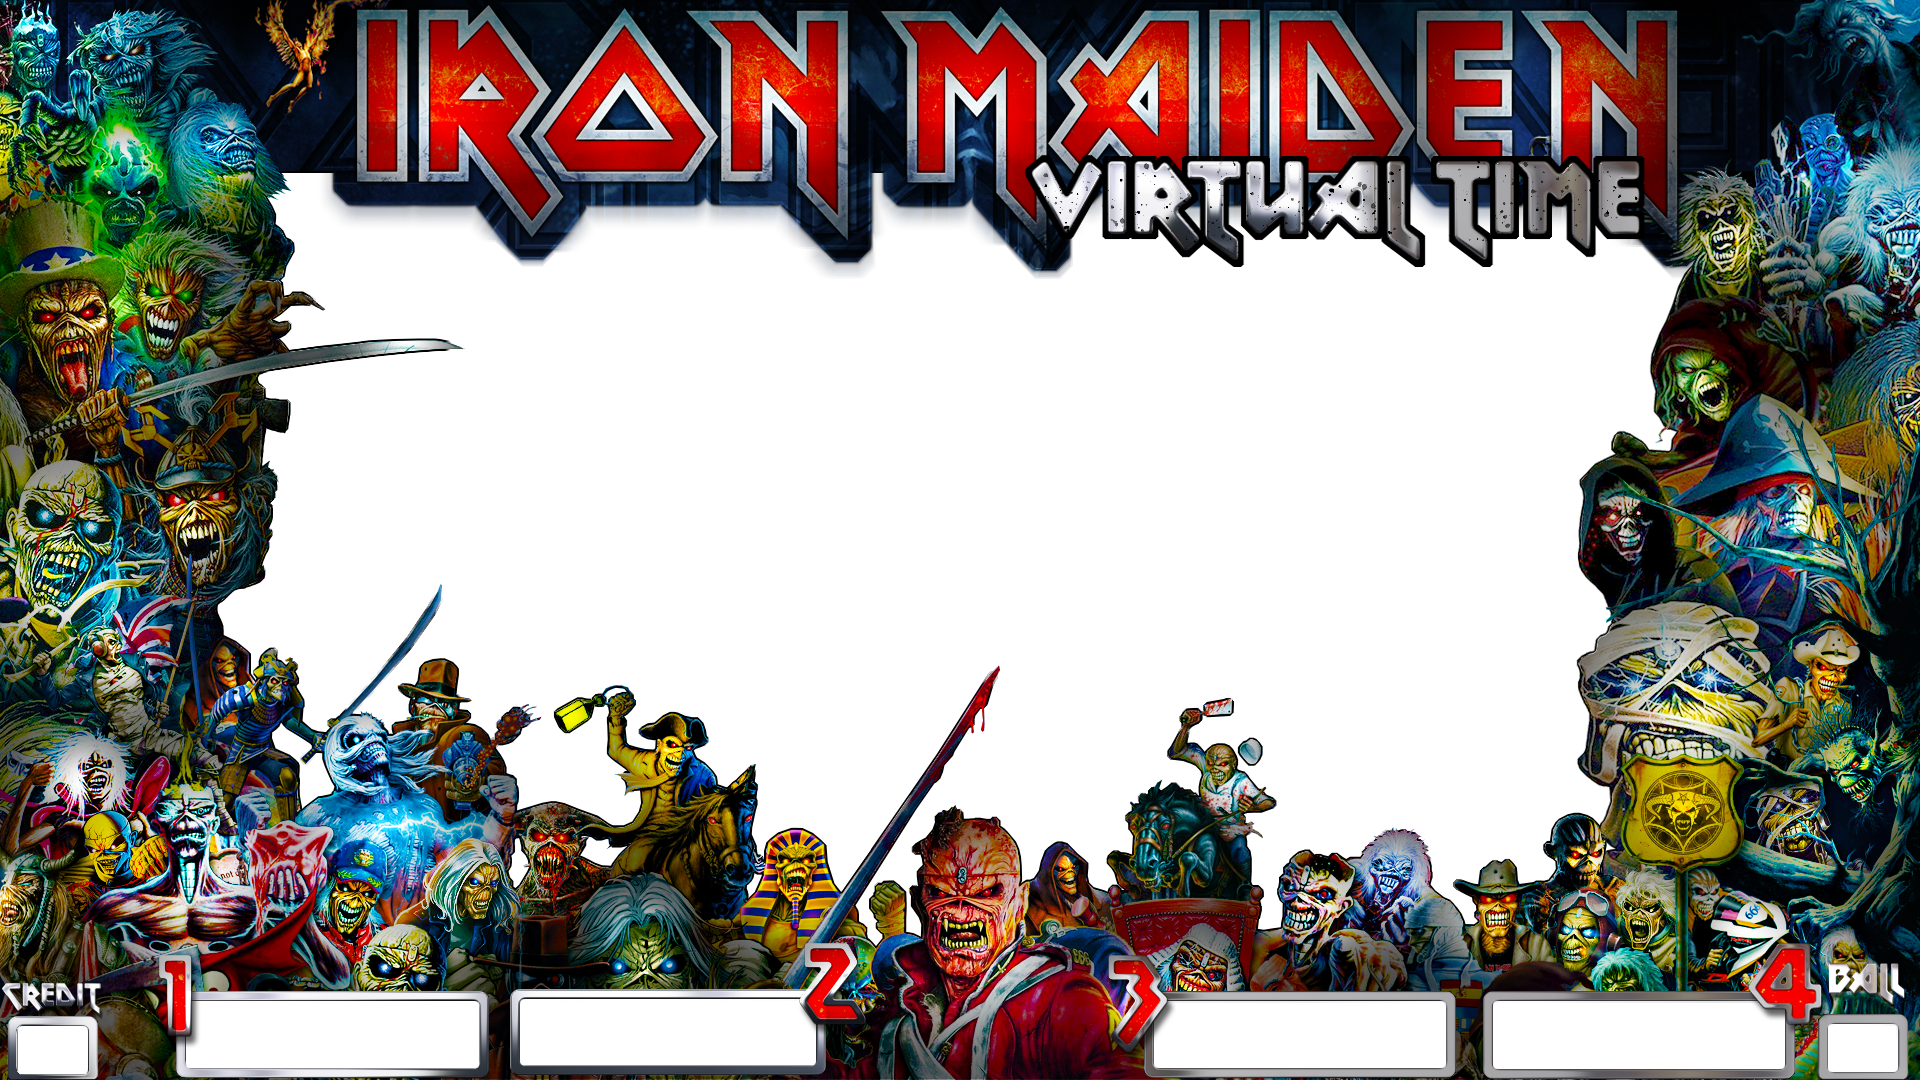 Alternative Iron Maiden Virtual Time Pup Overlay